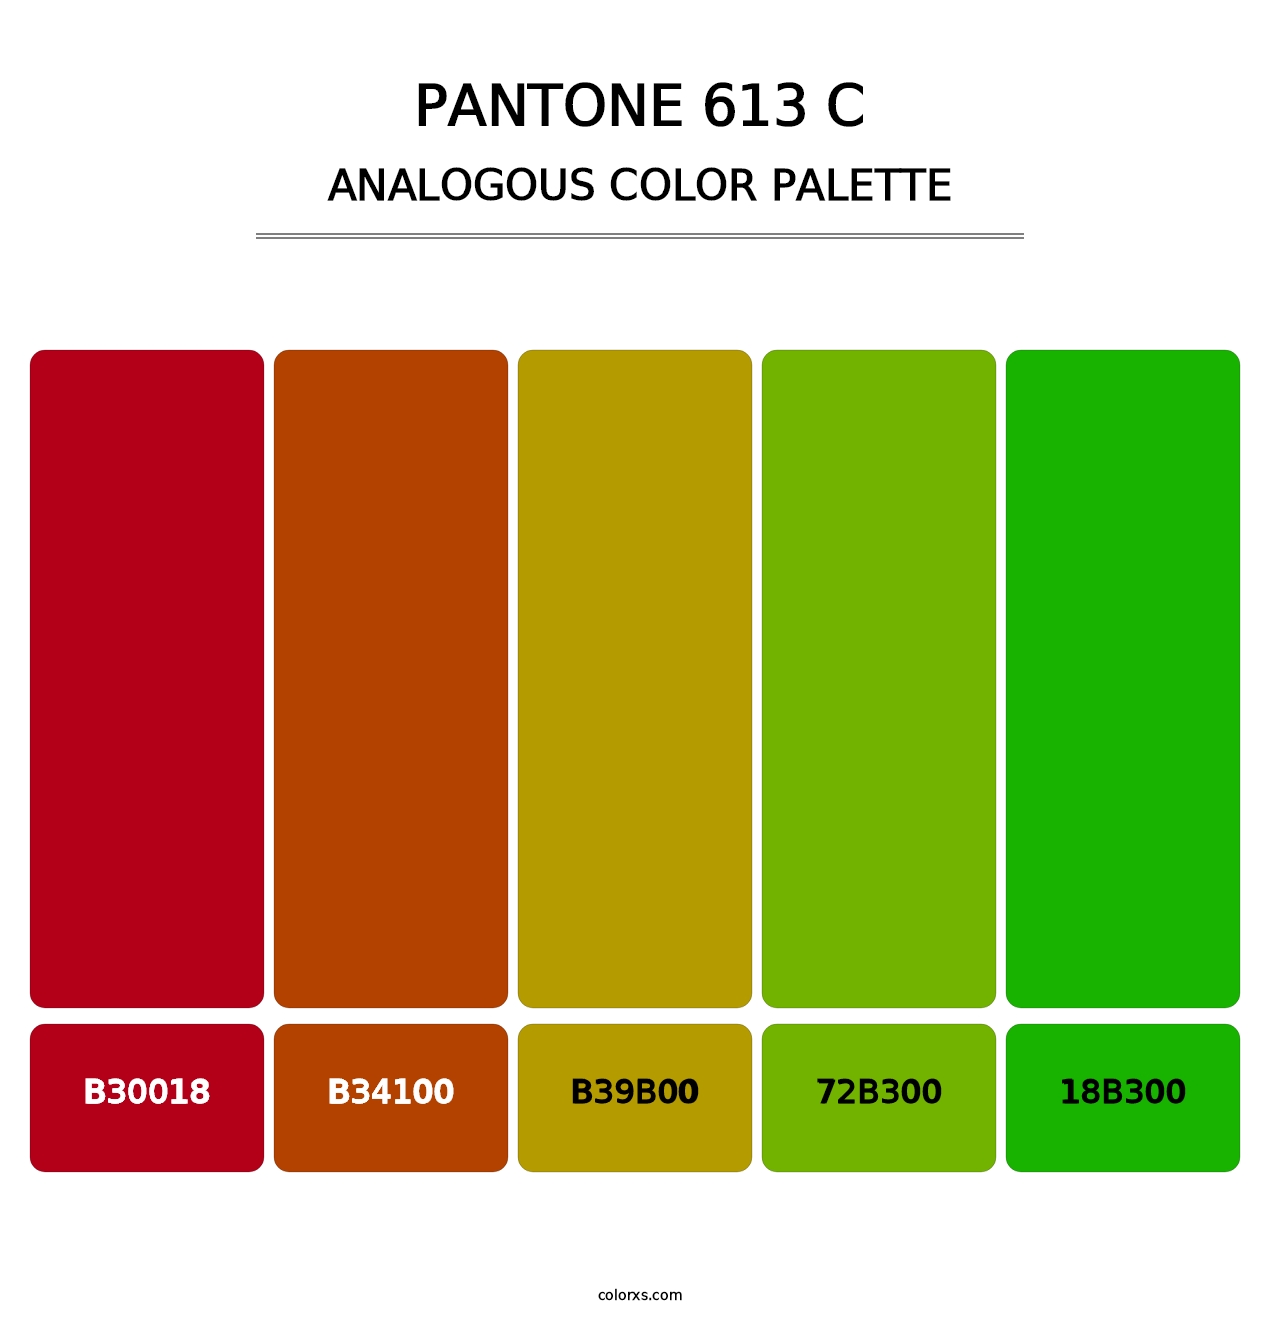 PANTONE 613 C - Analogous Color Palette